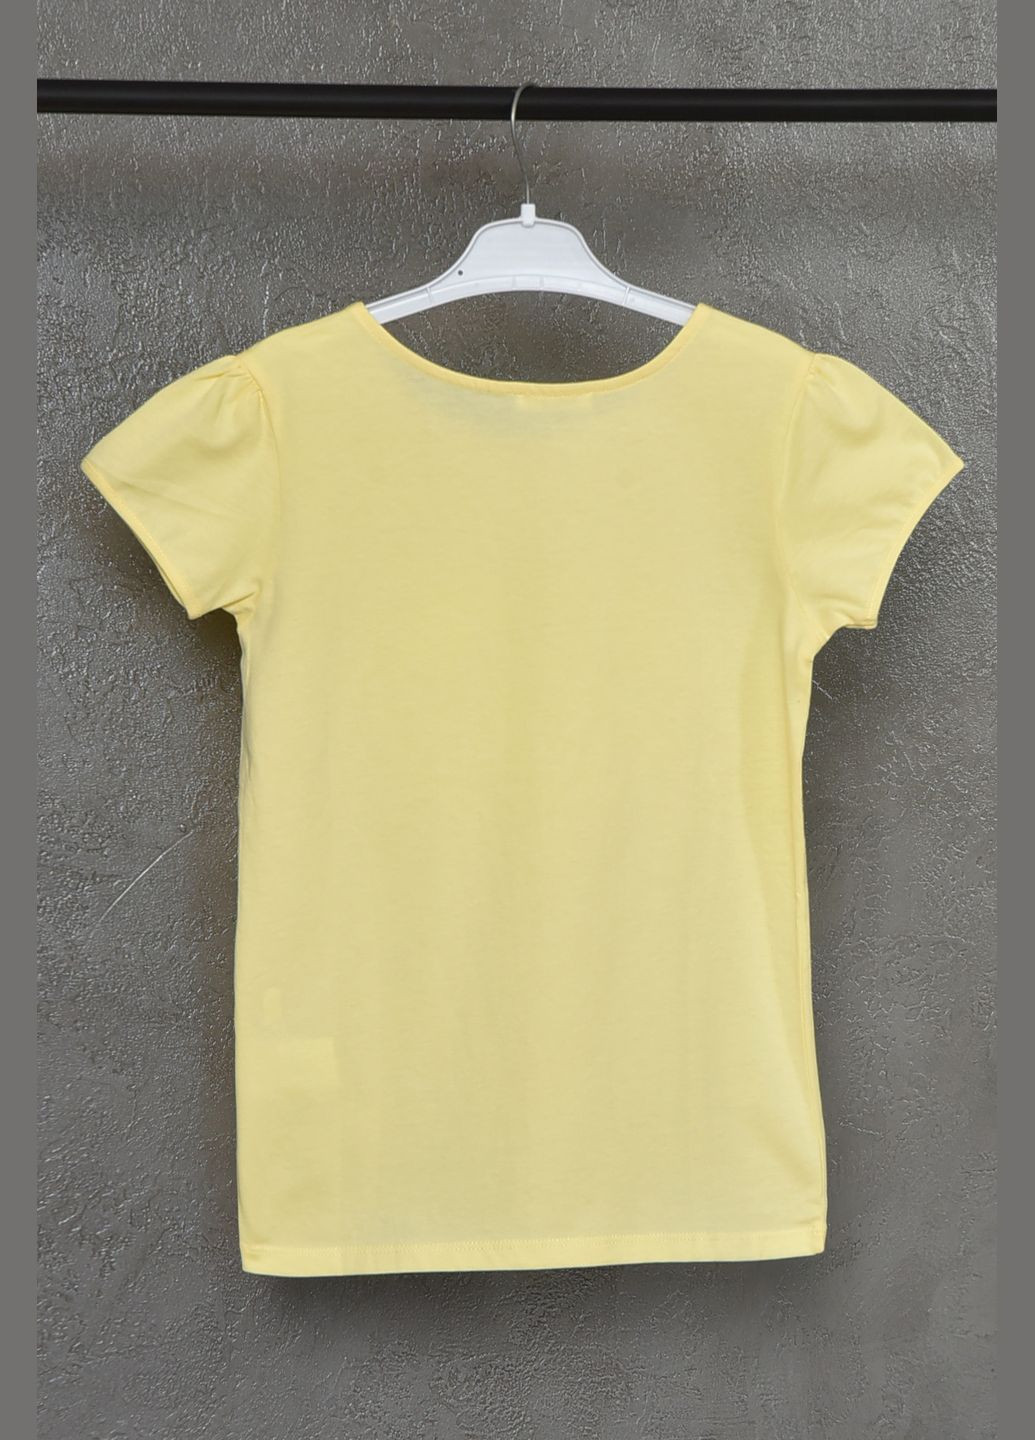 Желтая летняя футболка детская для девочки желтого цвета Let's Shop